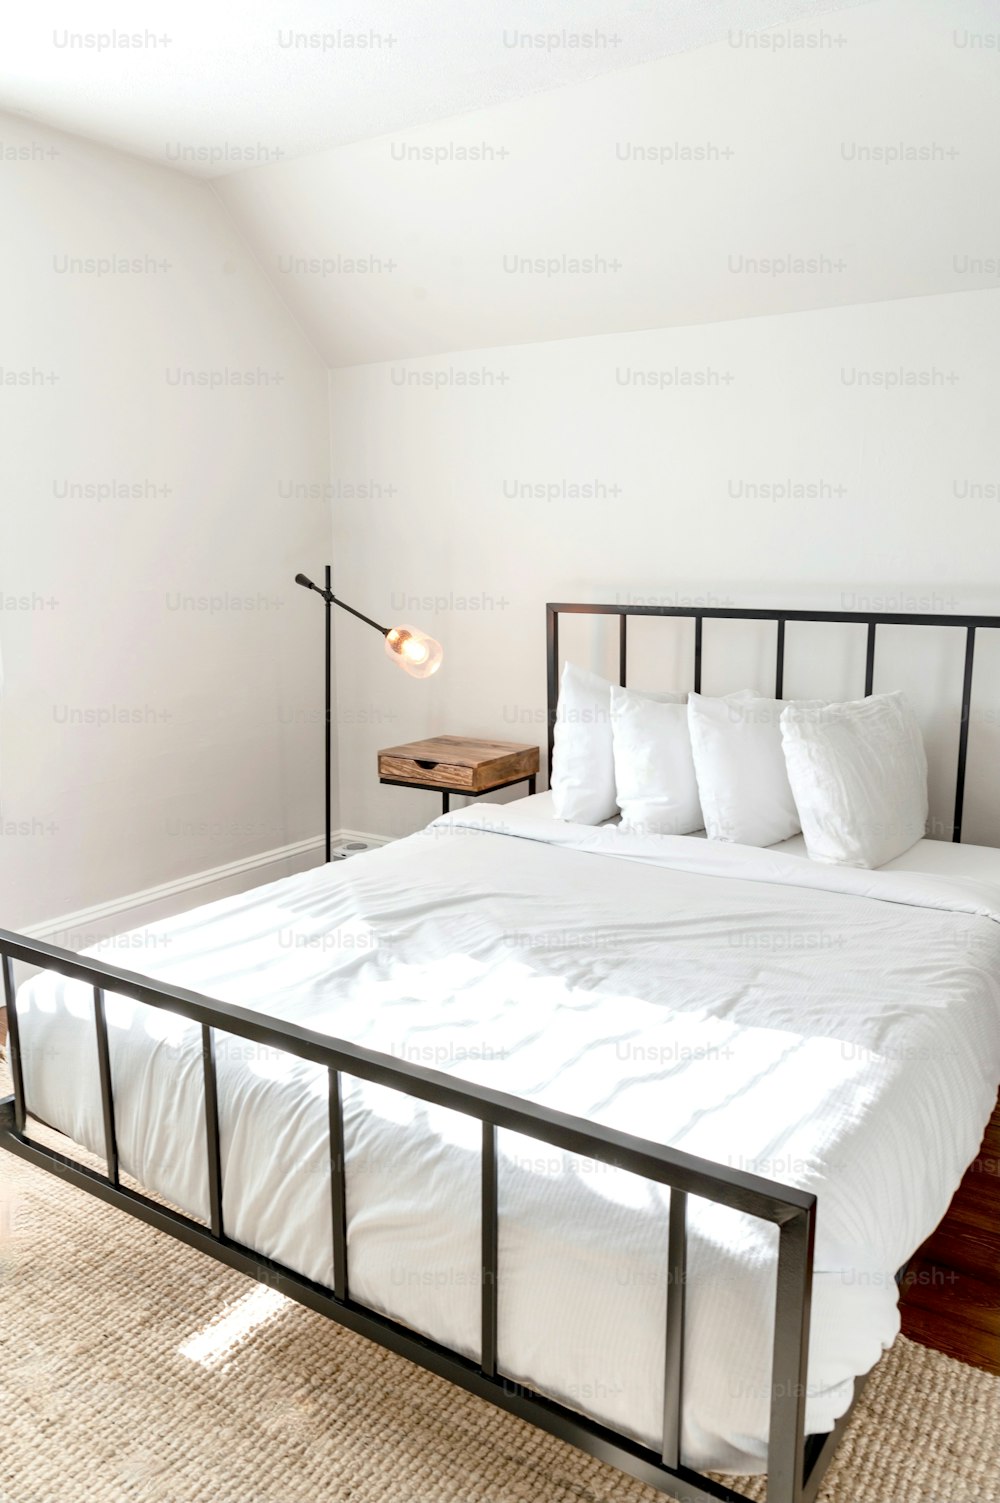 방에 하얀 시트와 베개가 있는 침대